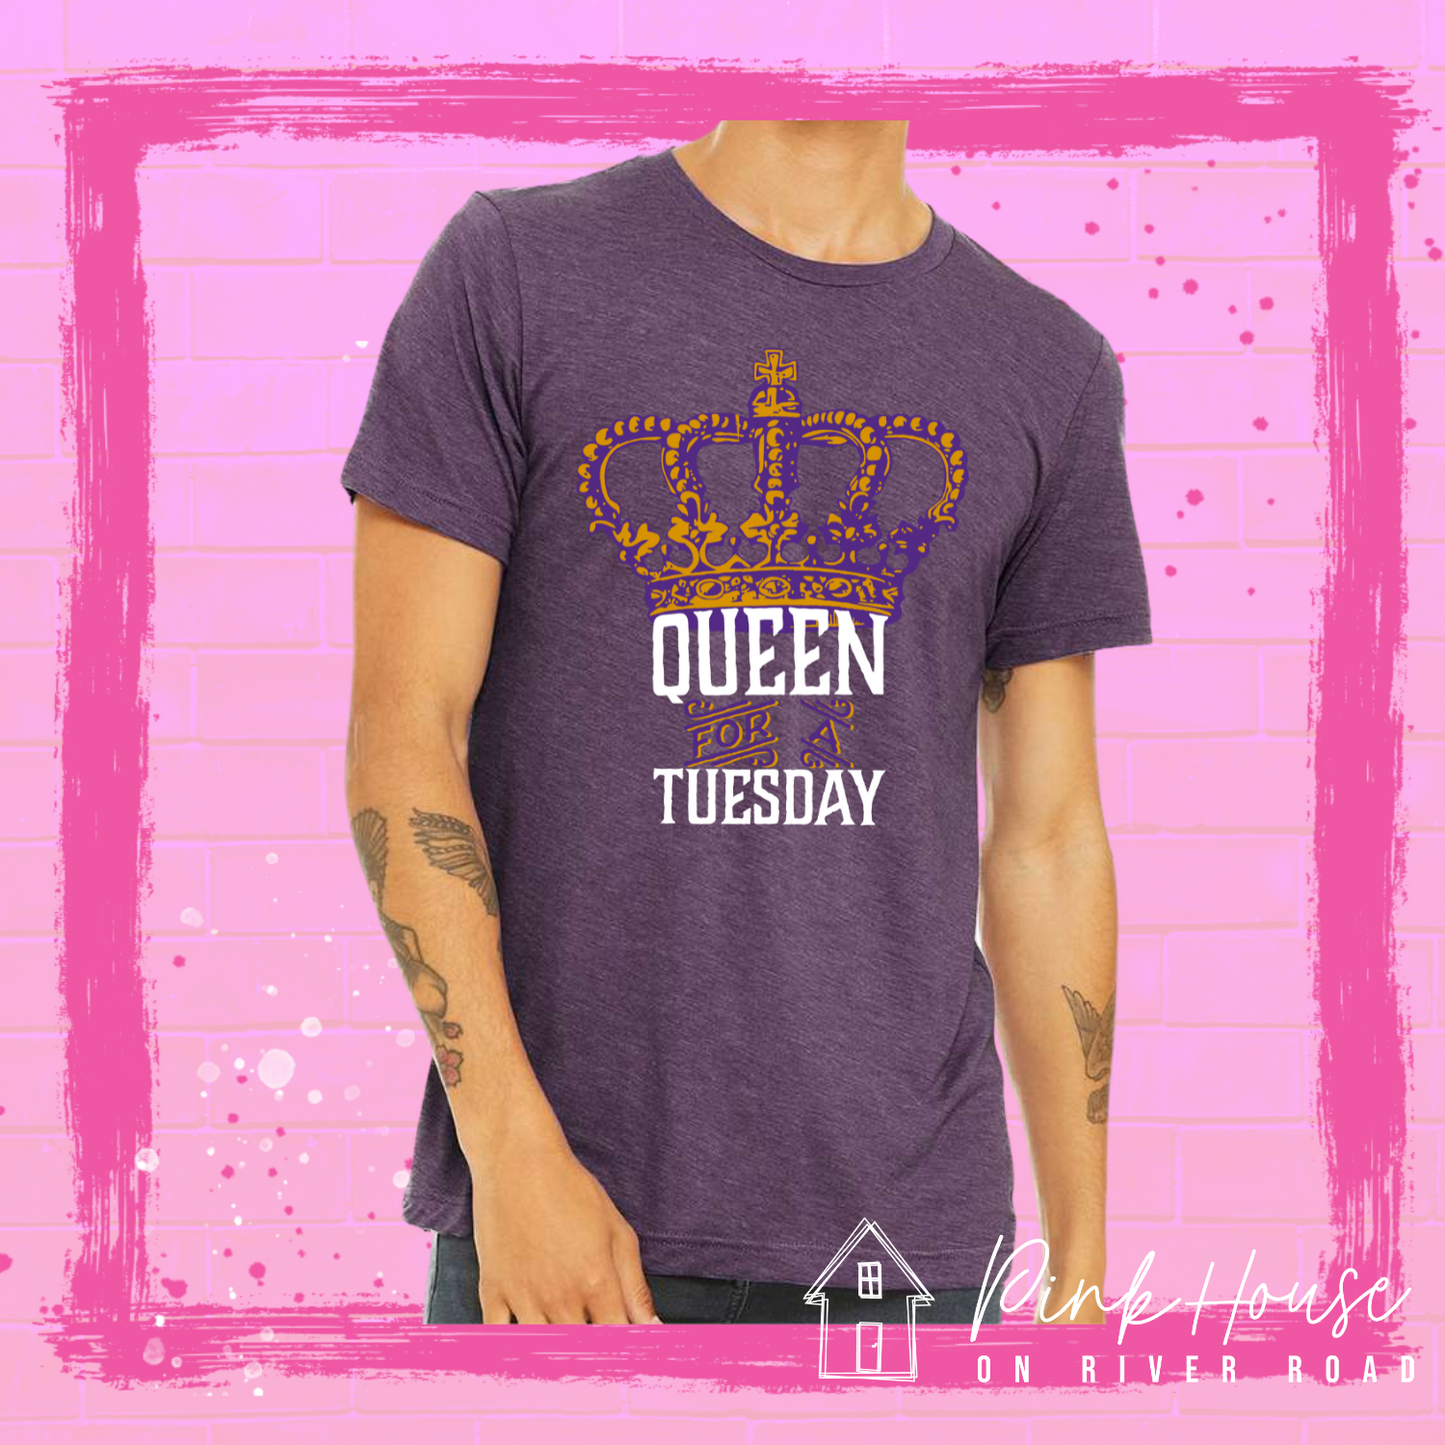 Queen for a Tuesday Louisiana Mardi Gras Graphic Tee